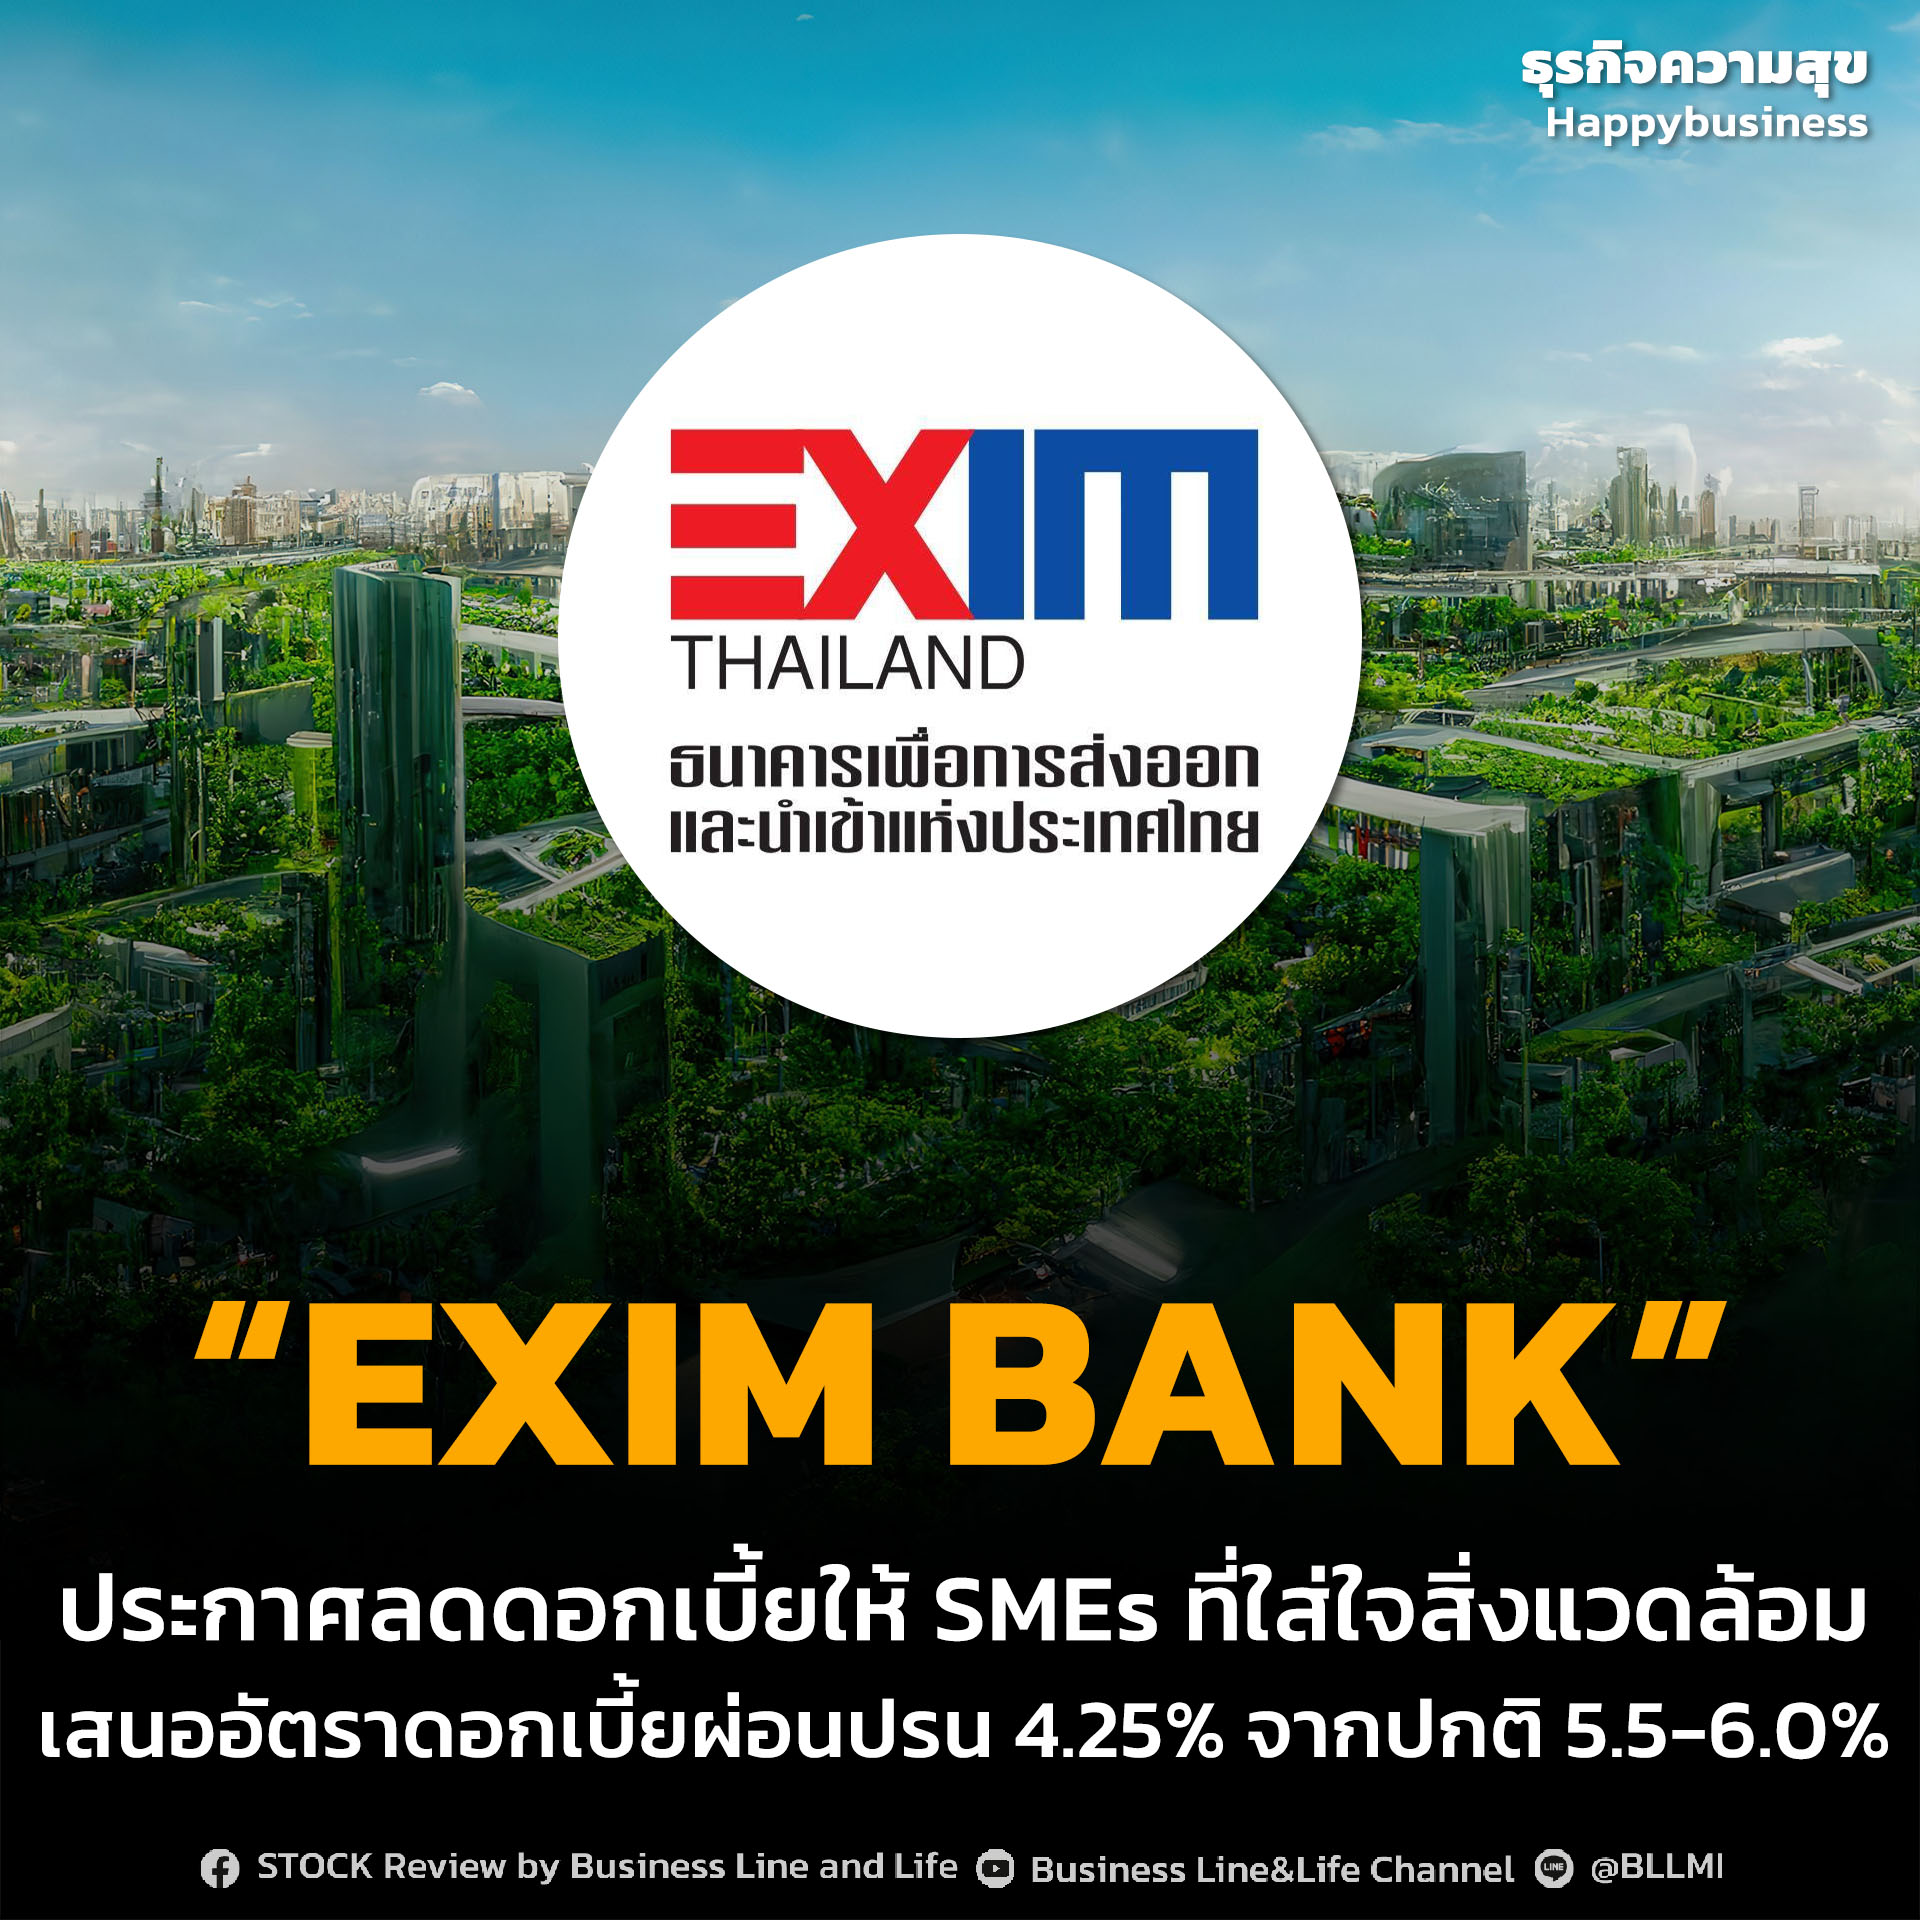 “EXIM BANK” ประกาศลดดอกเบี้ยให้ SMEs ที่ใส่ใจสิ่งแวดล้อม เสนออัตราดอกเบี้ยผ่อนปรน 4.25% จากปกติ 5.5-6.0%